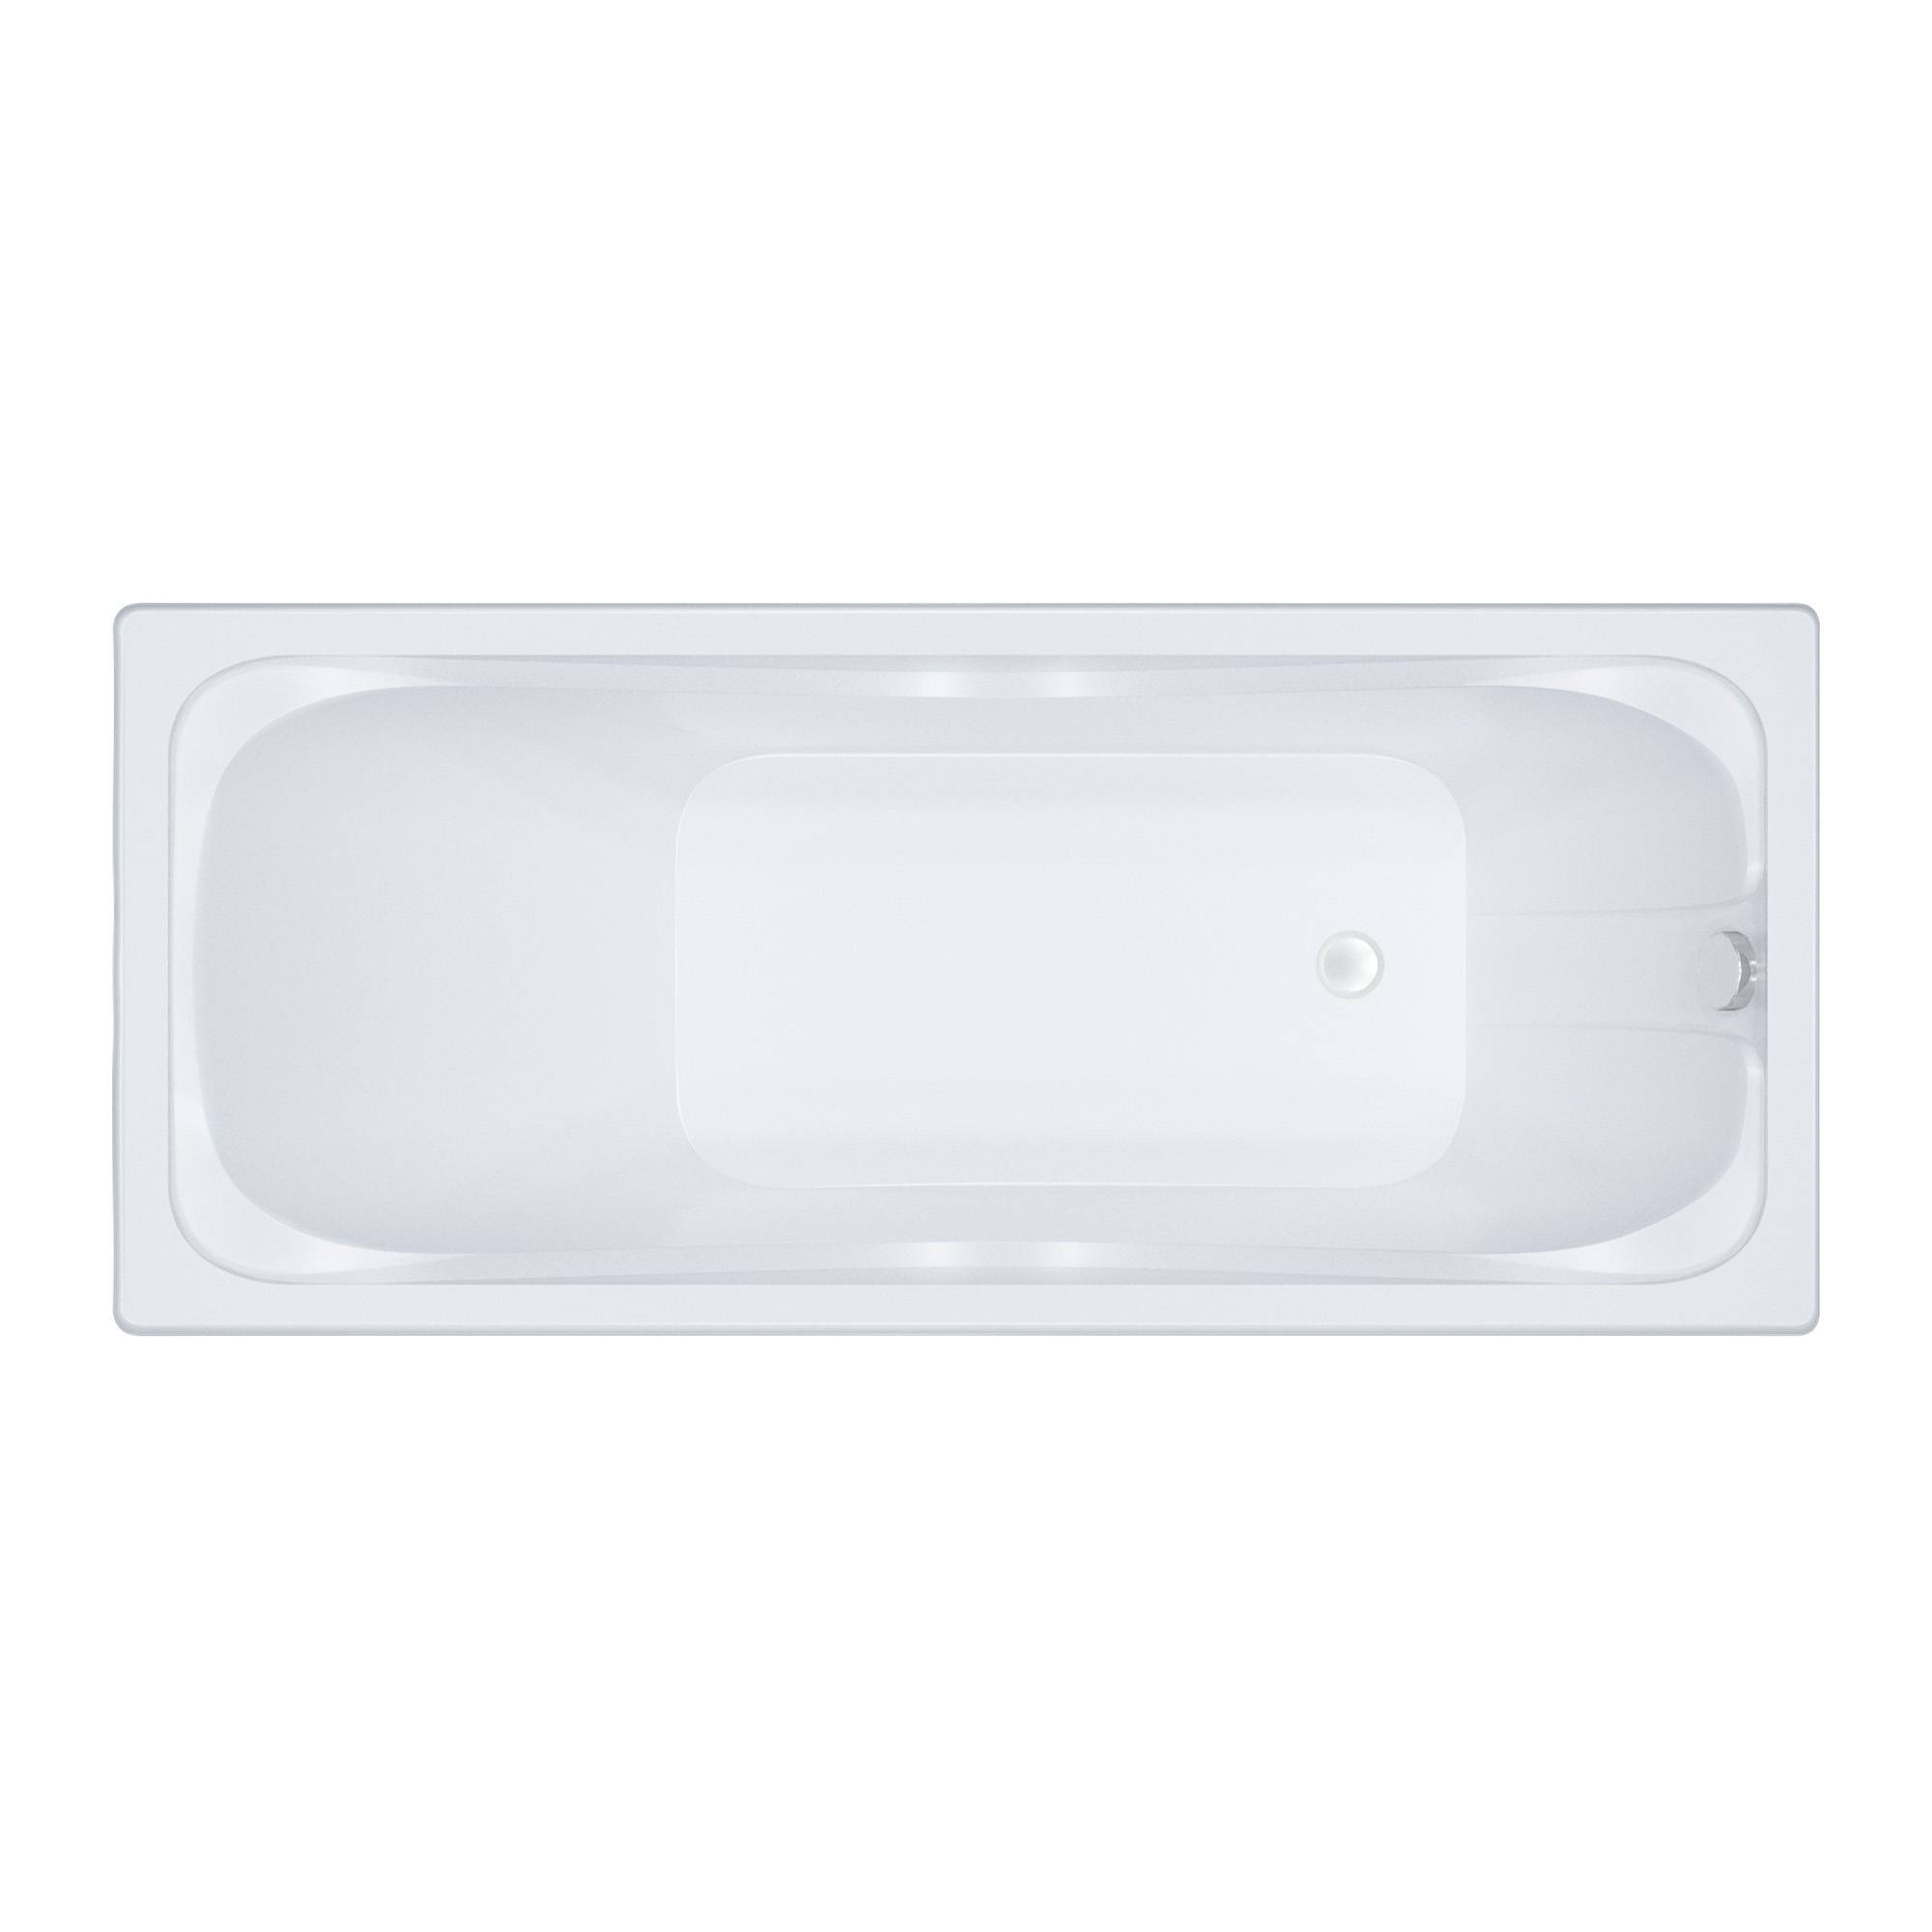 Акриловая ванна Тритон Стандарт 170, цвет белый Н0000099330 - фото 1